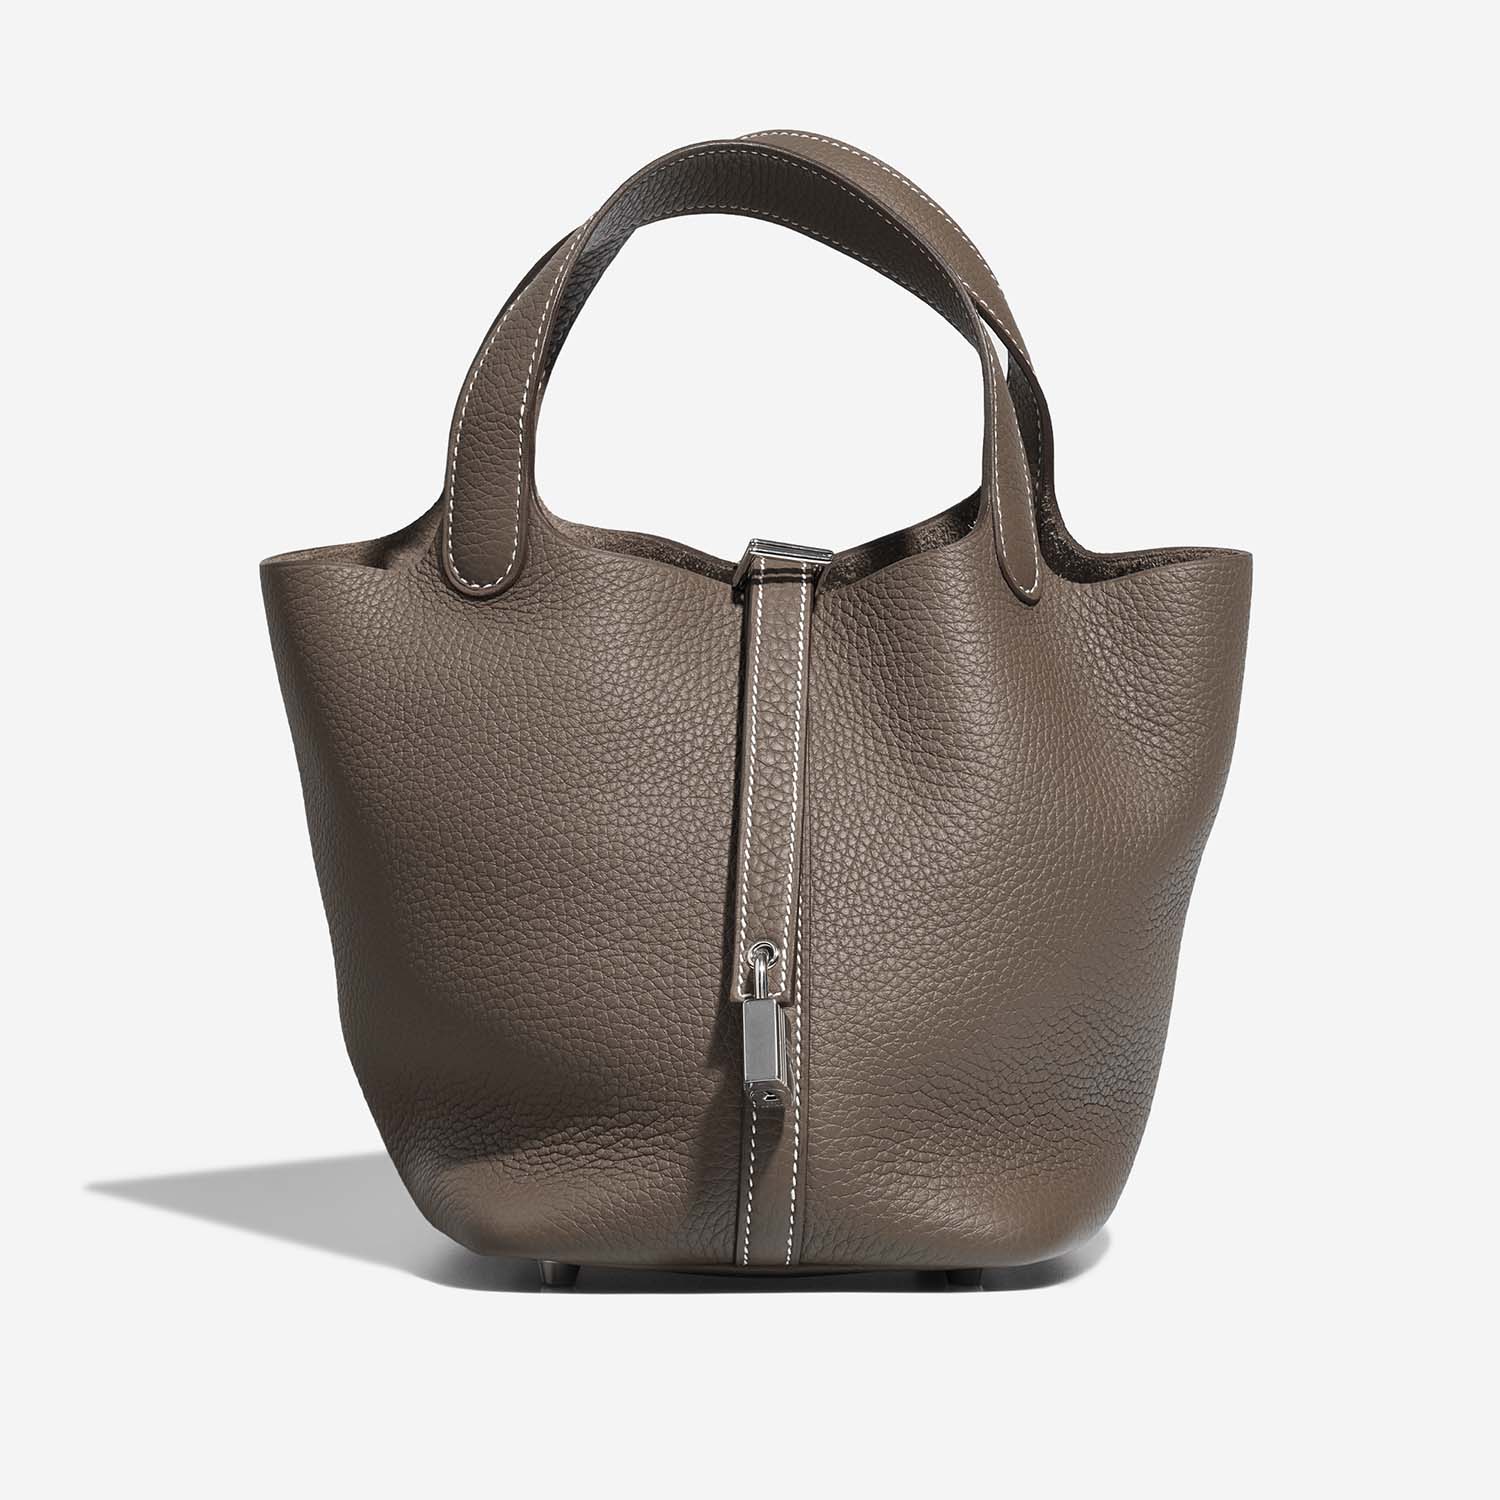 Hermès Picotin 18 Etoupe 2F S | Verkaufen Sie Ihre Designer-Tasche auf Saclab.com